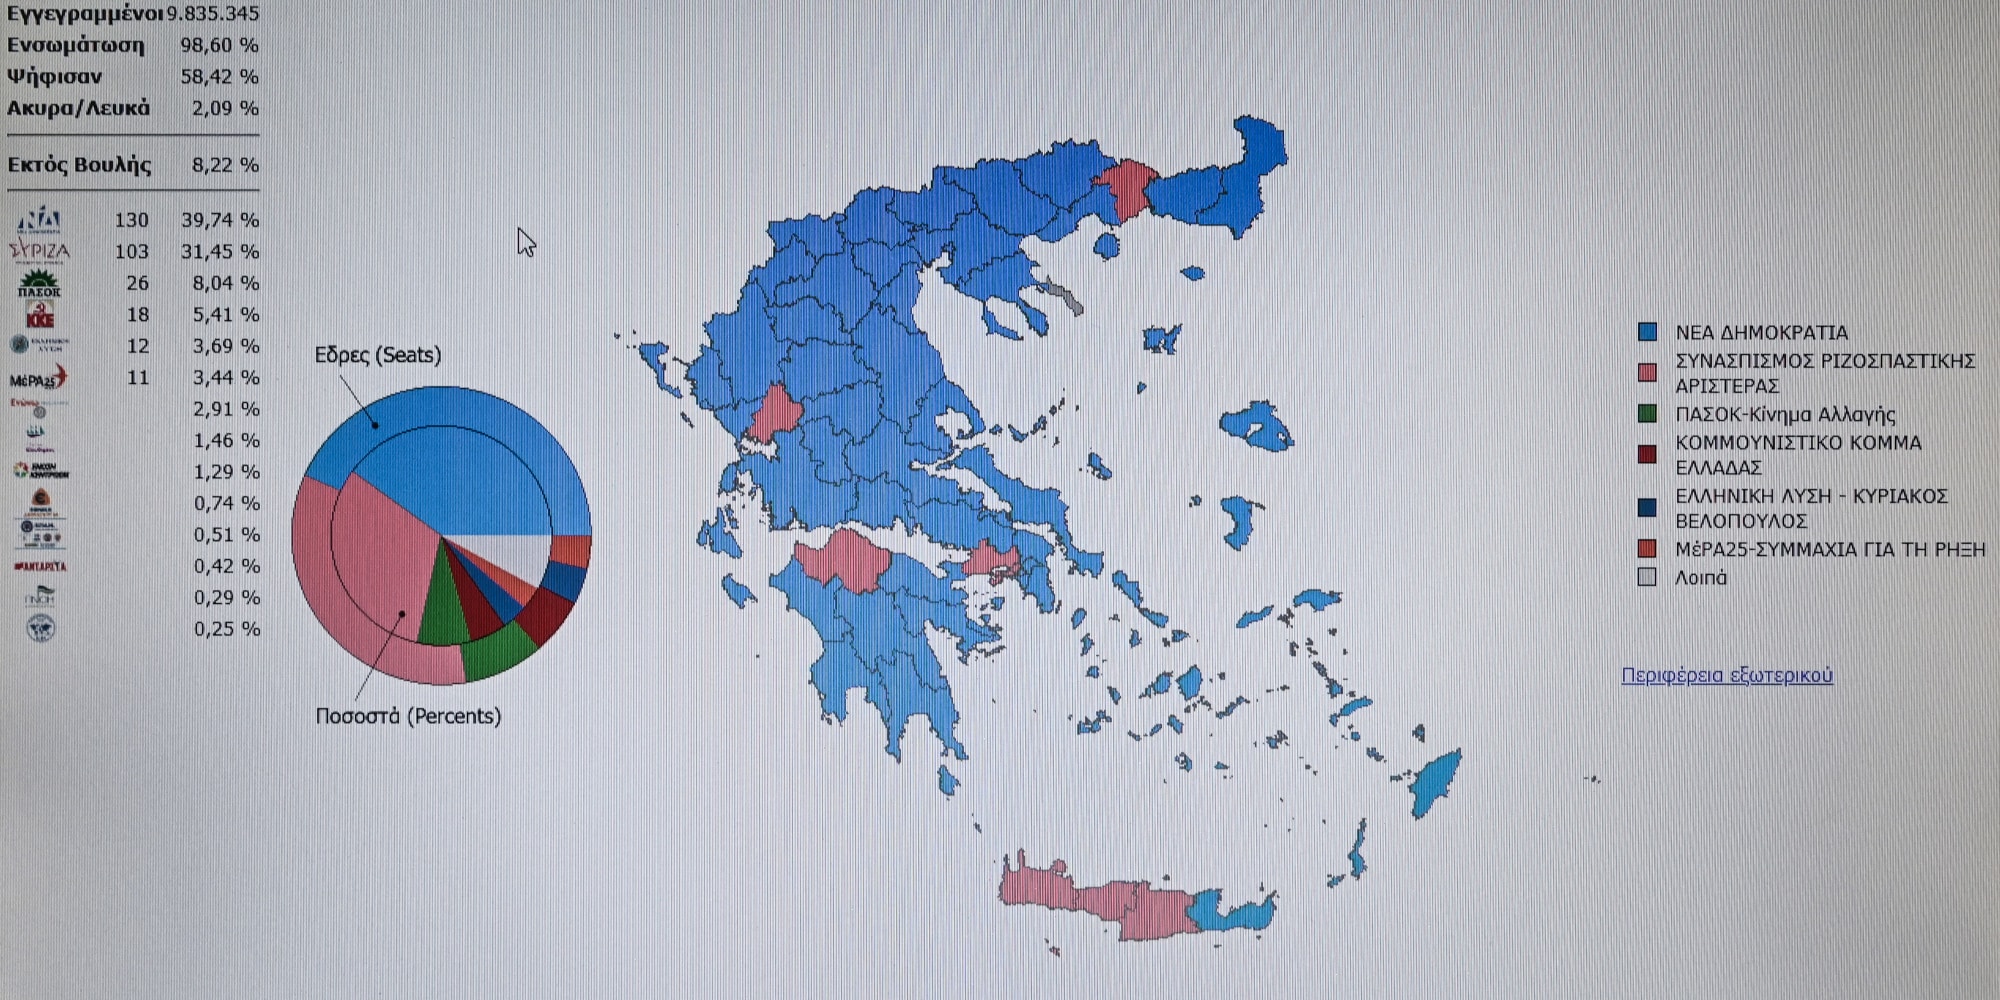 Μάθετε πρώτοι τα αποτελέσματα των εκλογών στις Σέρρες